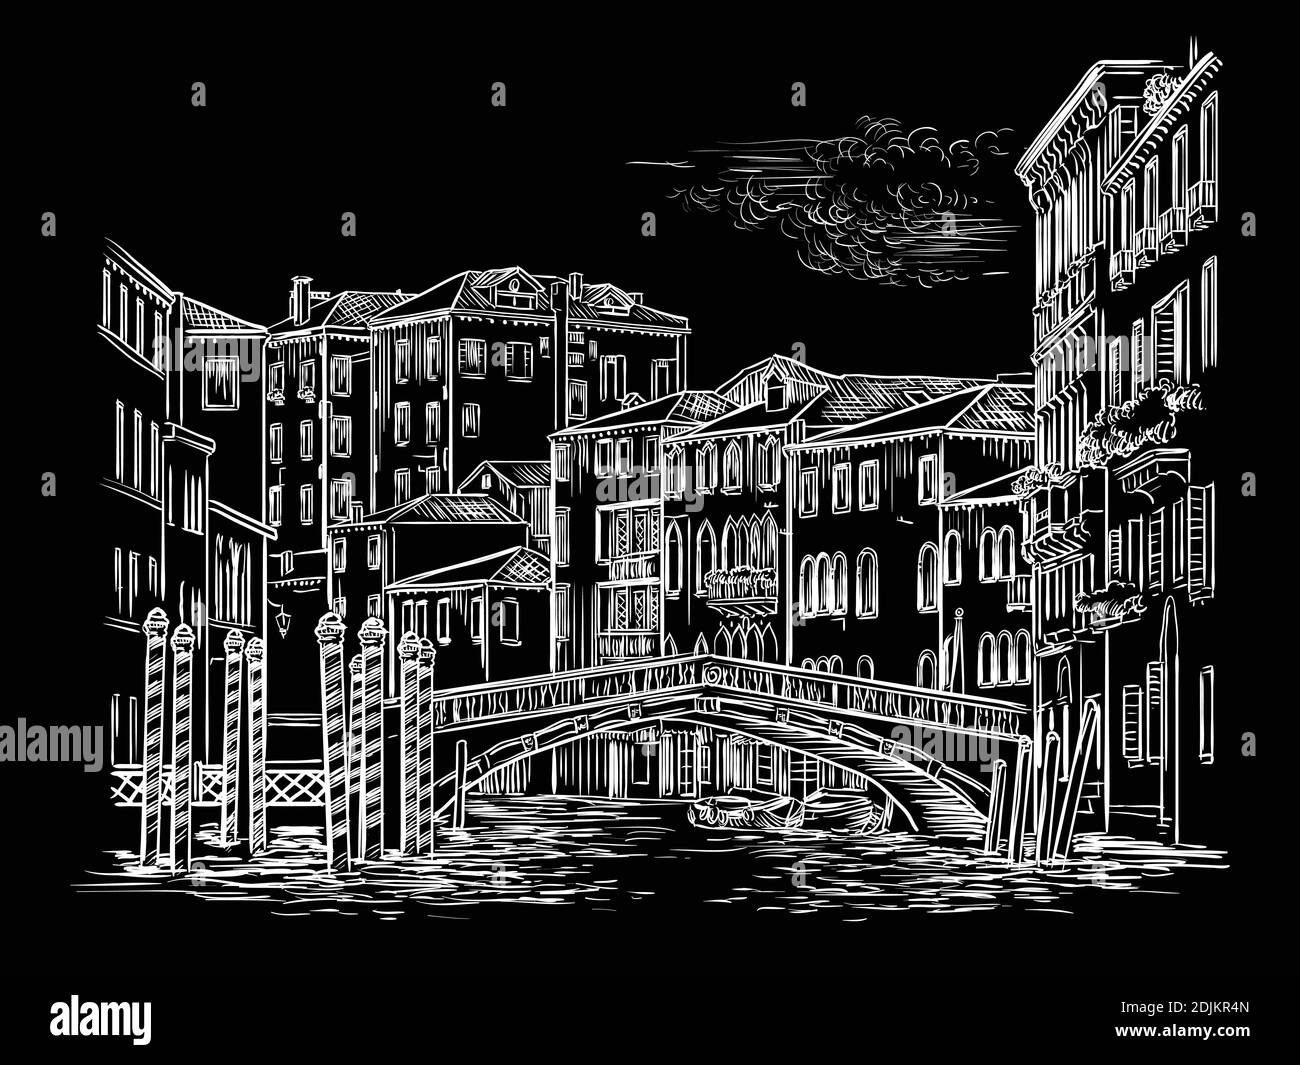 Vektor-Handzeichnung Illustration der Brücke auf dem Kanal in Venedig. Venedig horizontale Stadtbild handgezeichnete Skizze in weißer Farbe isoliert auf schwarzem Hintergrund Stock Vektor